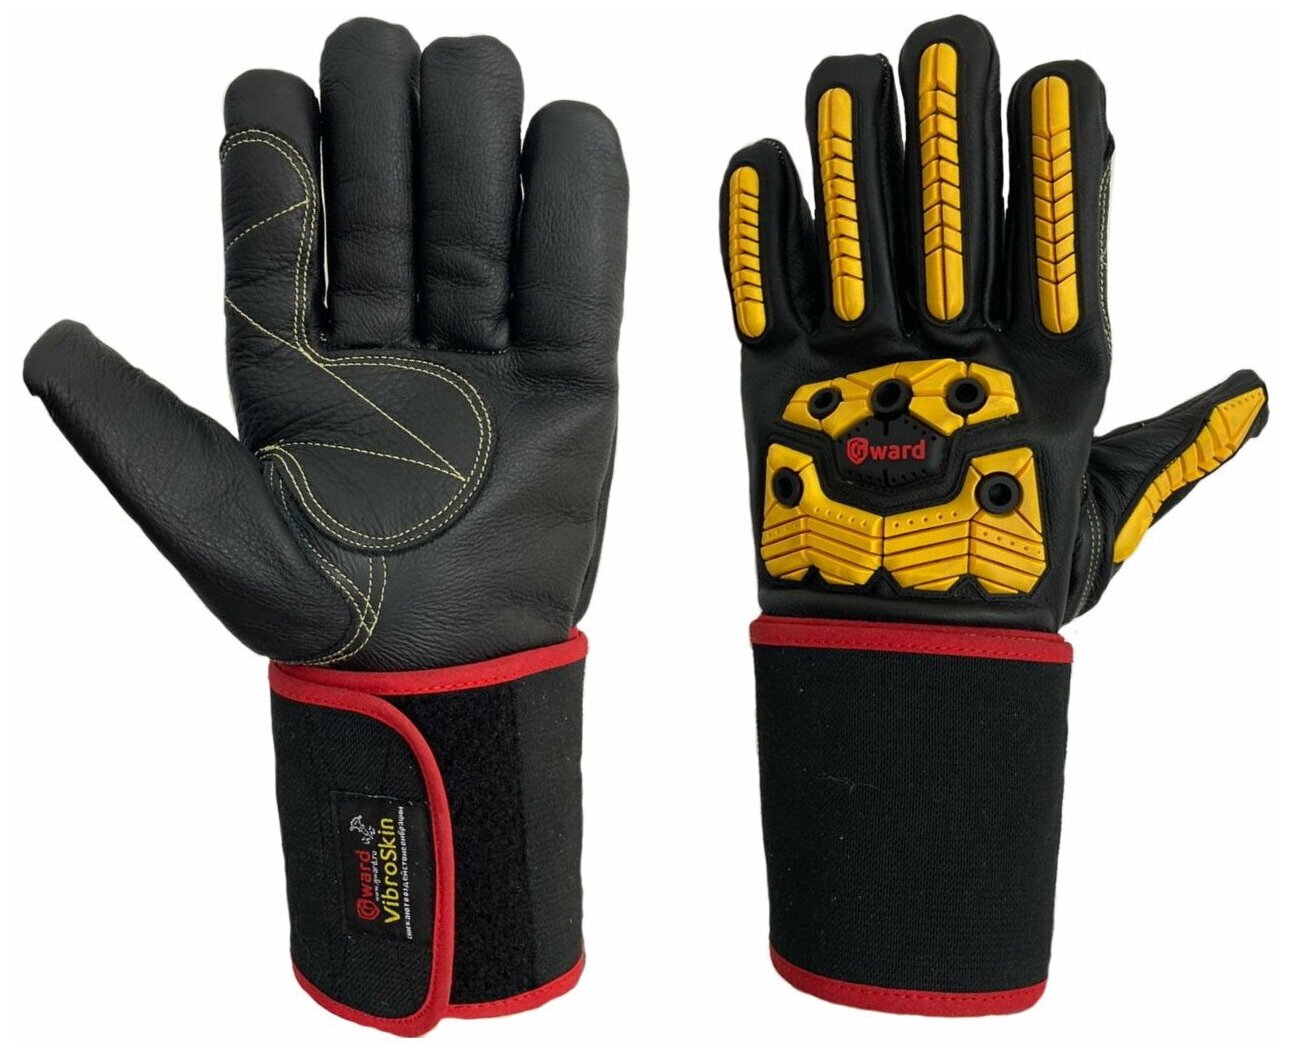 Антивибрационные кожаные перчатки с ударной защитой Gward Vibroskin 10 размер